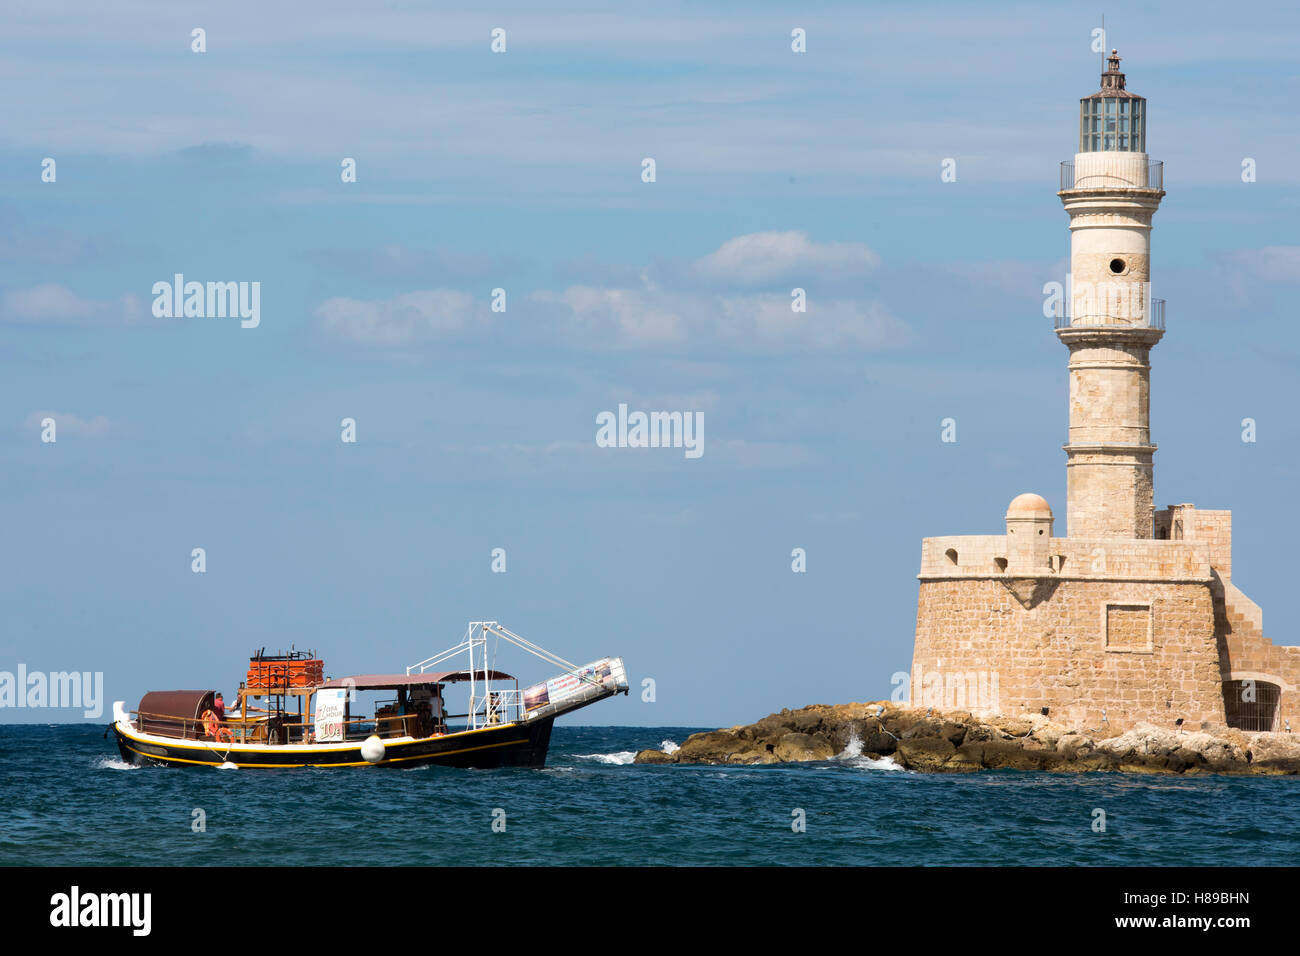 Griechenland, Kreta, Chania, Ausflugsboot Vor Dem Leuchtturm eine der Hafeneinfahrt des Venezianischen Hafens Stockfoto